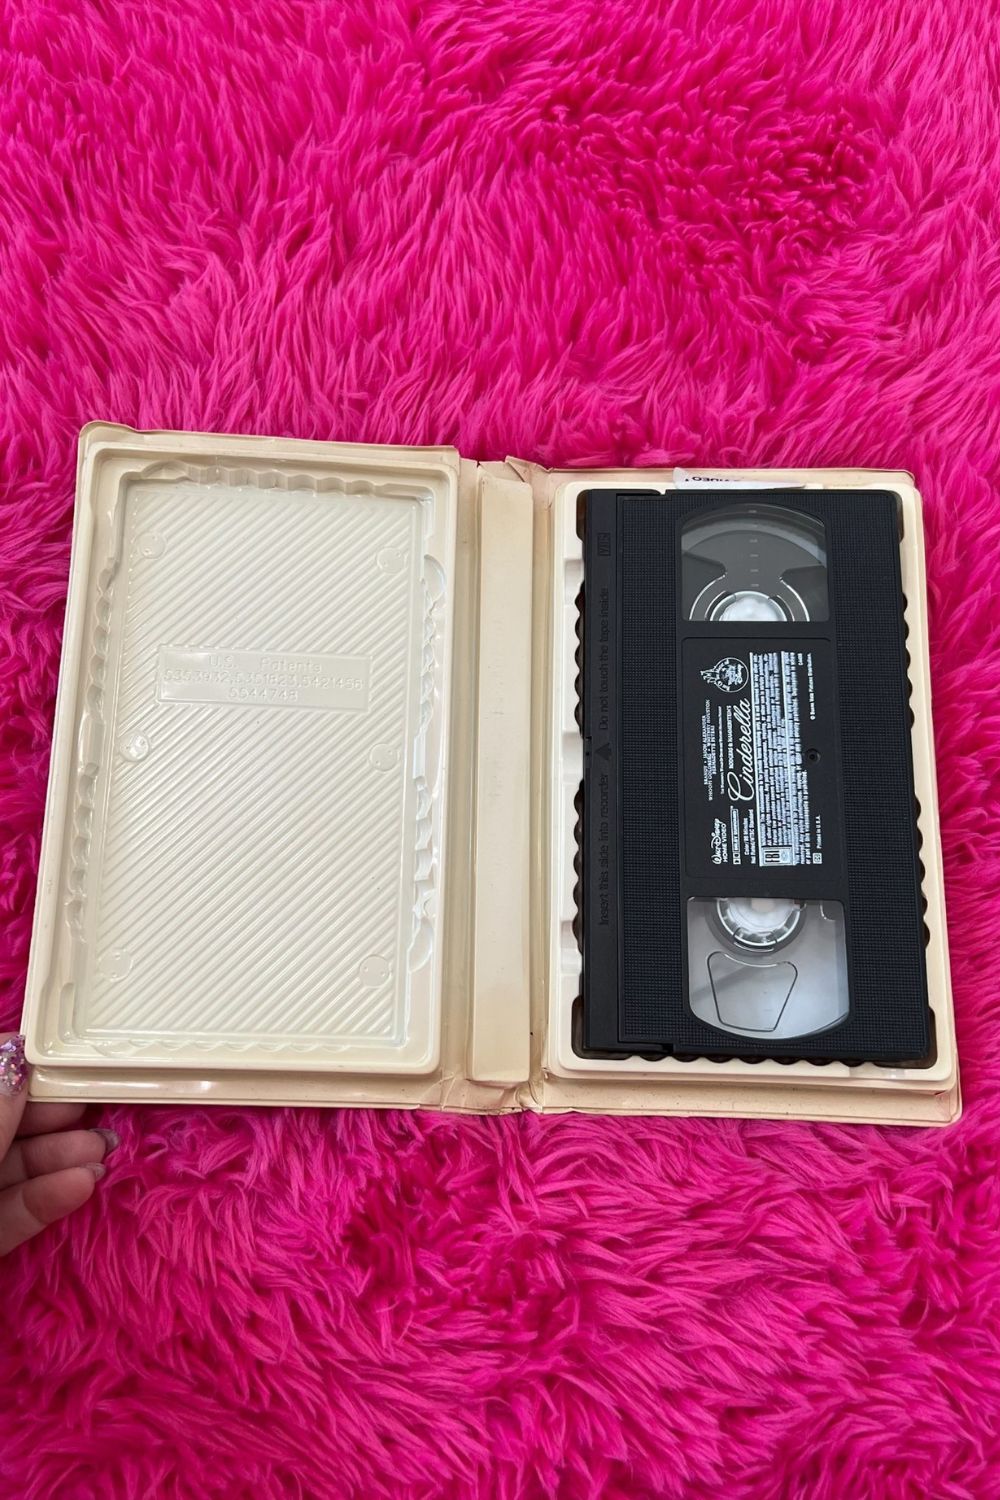 RODGERS & HAMMERSTEIN'S CINDERELLA VHS*